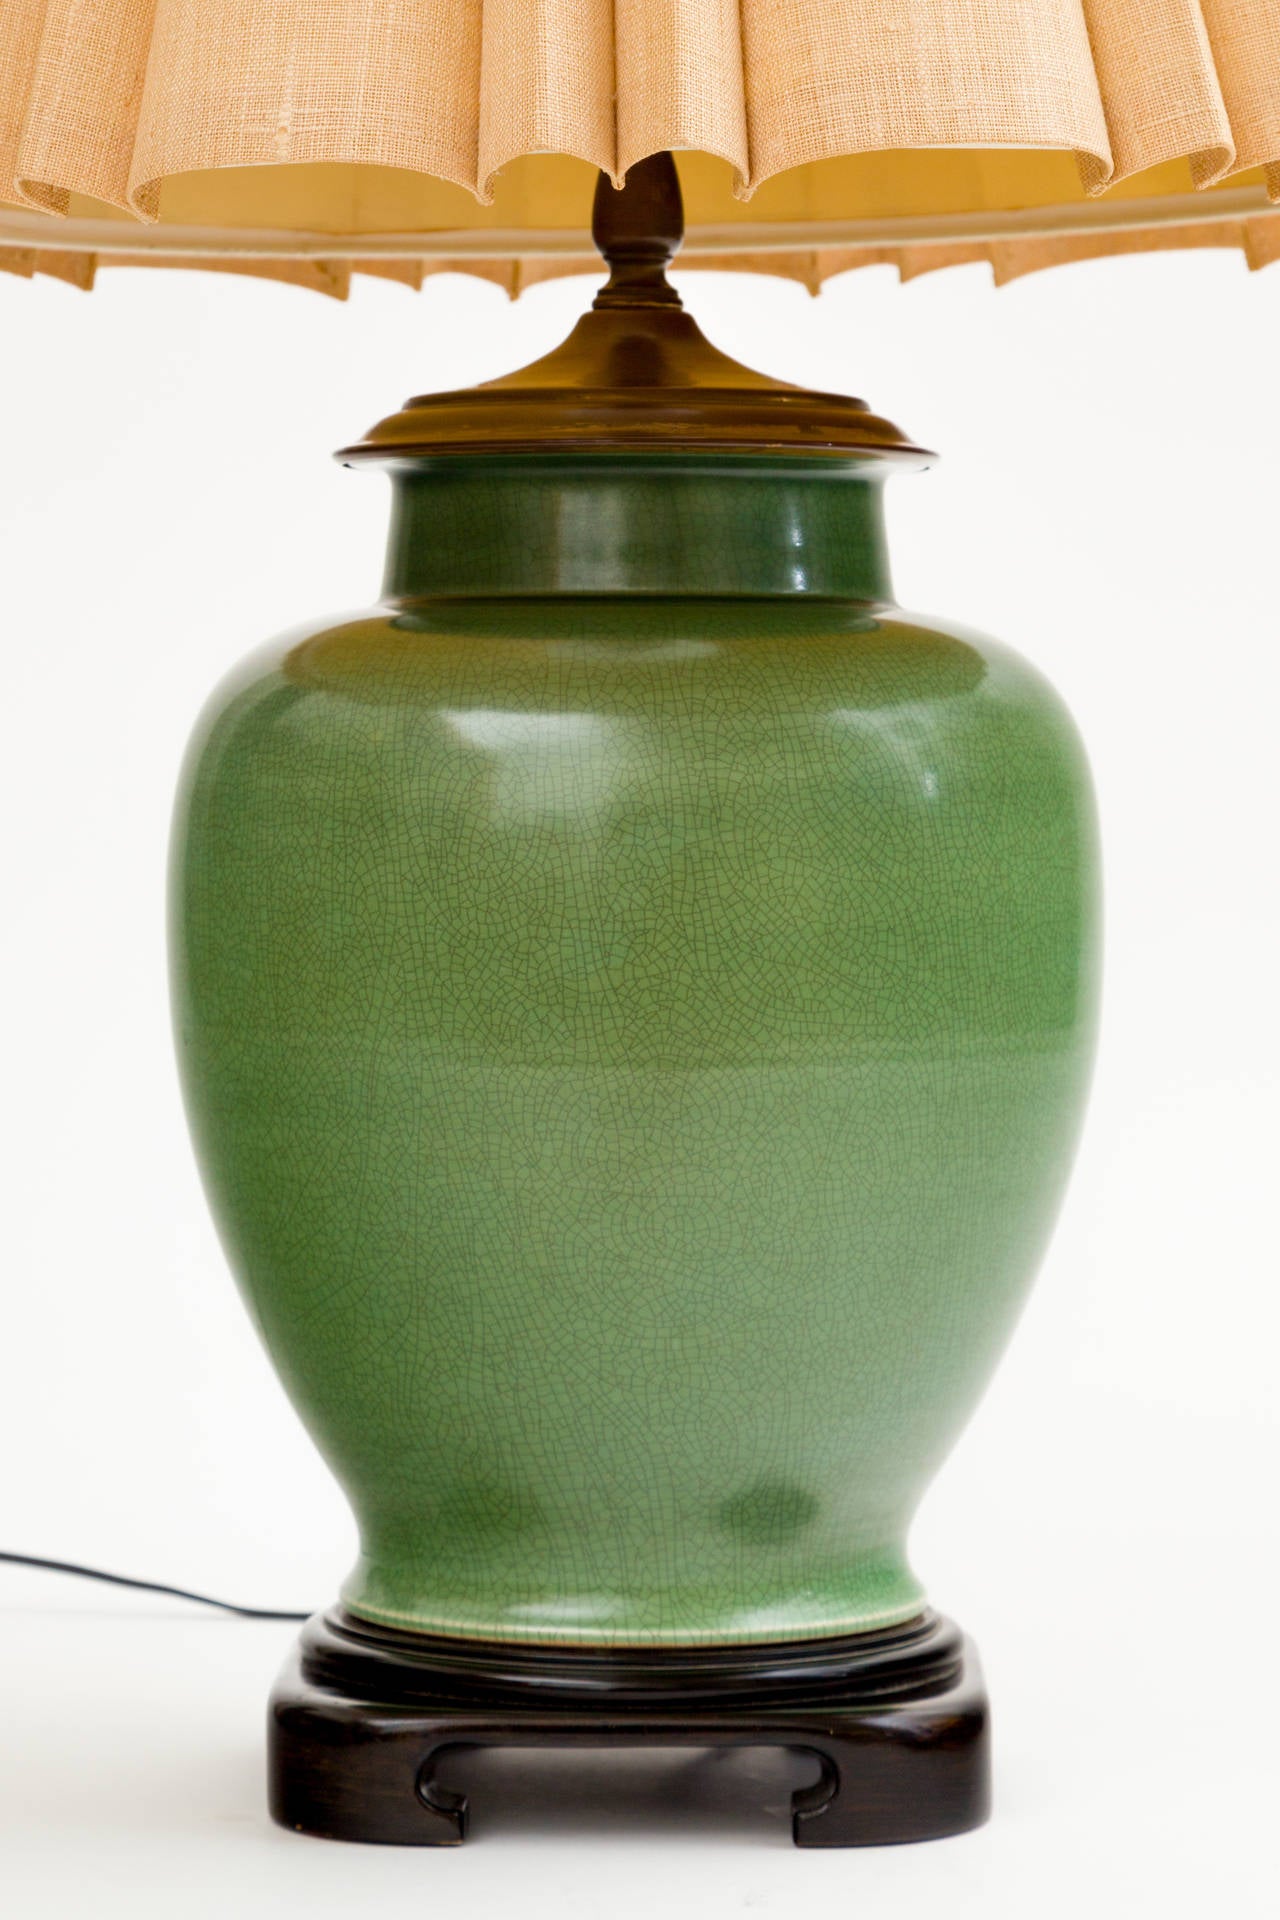 Lampe pot à gingembre en céramique de jade sur base en bois ébonisé. 
Embout et ferrure en laiton massif, symbole chinois du 